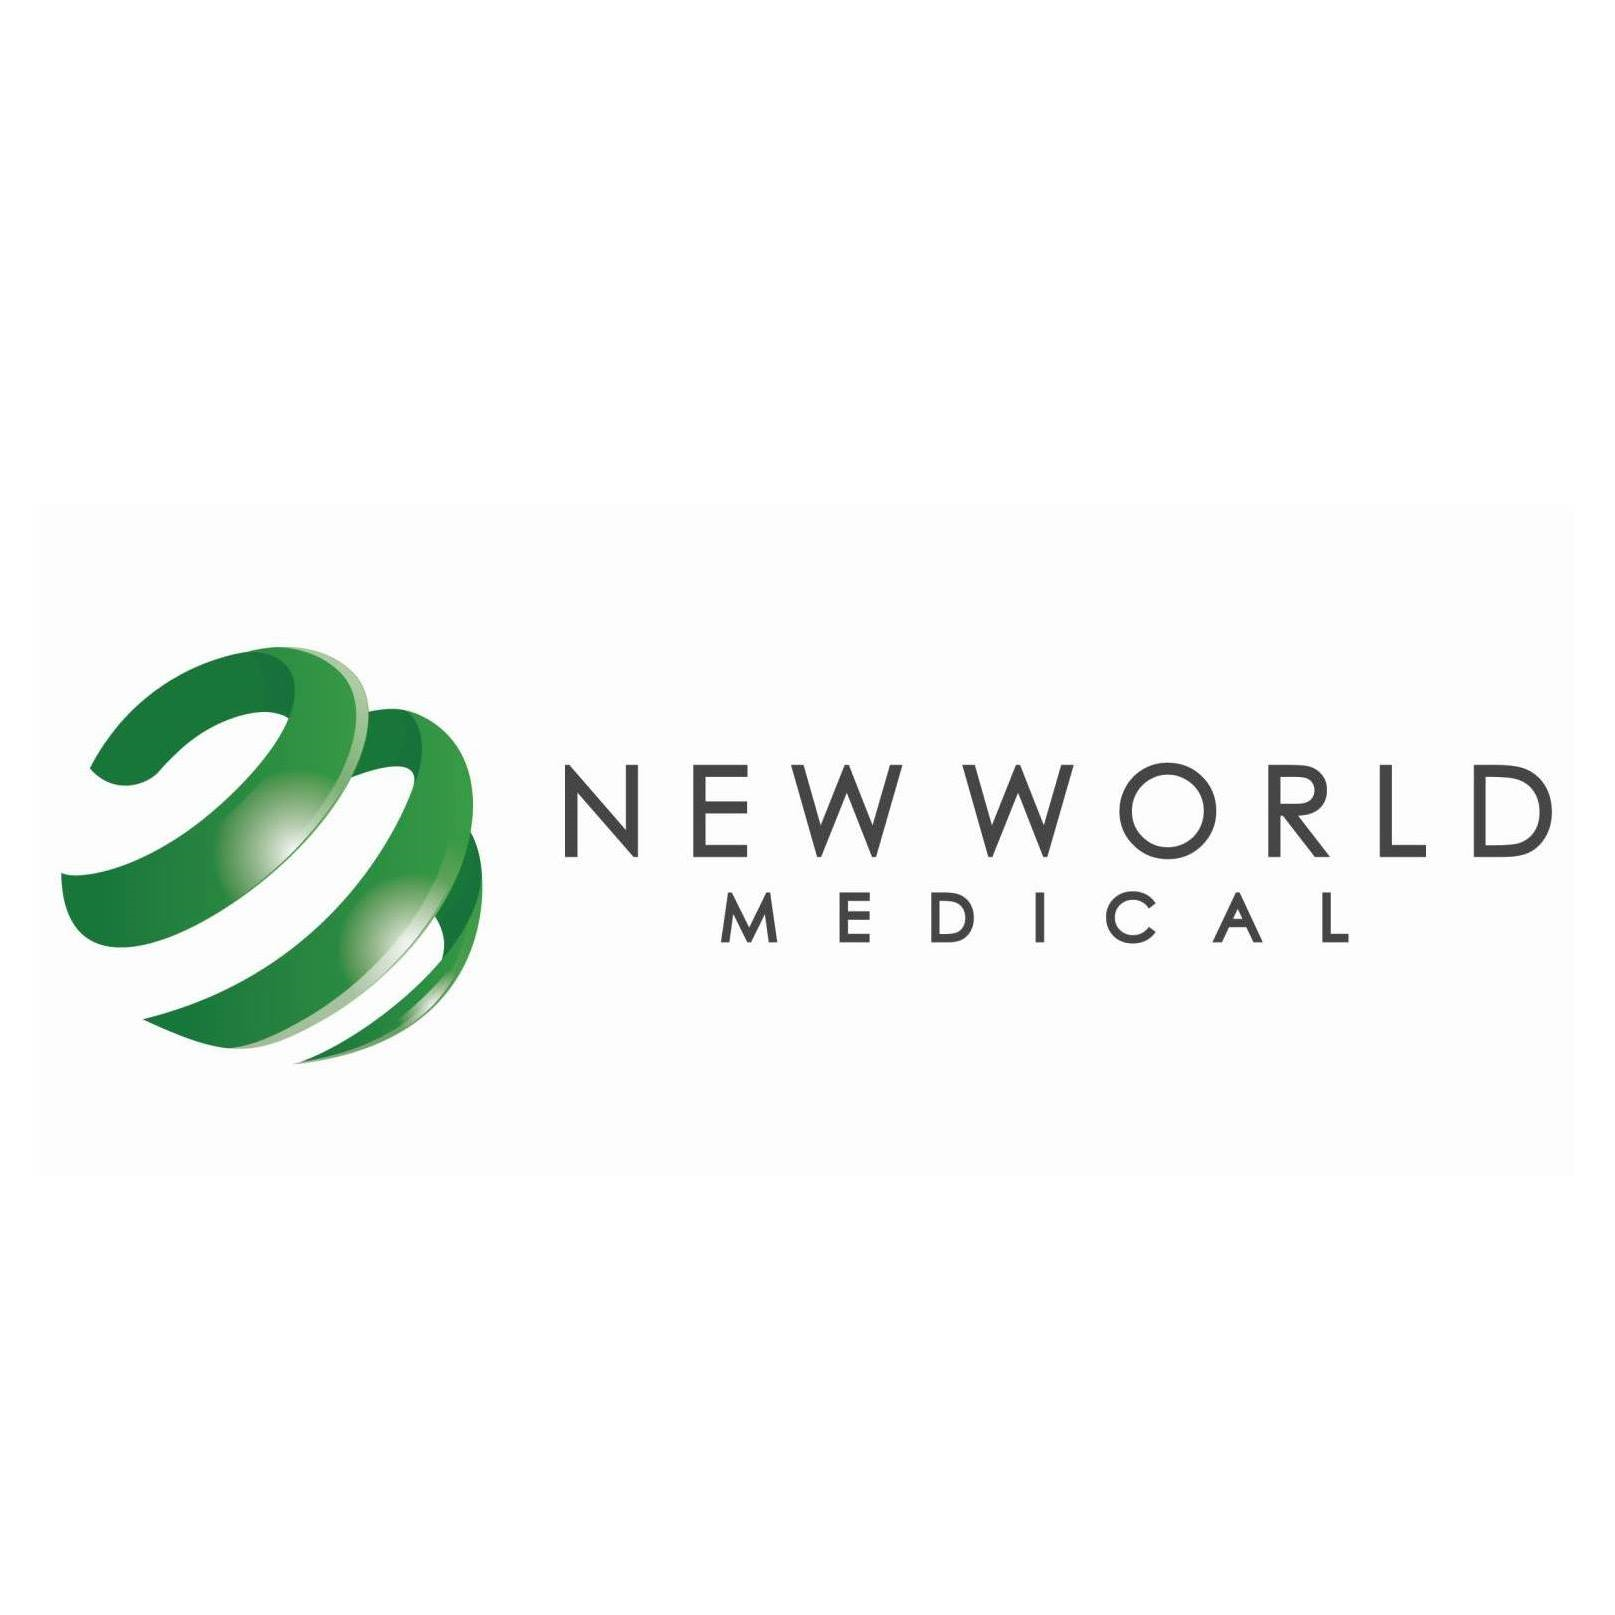 New World Medical Company Logo